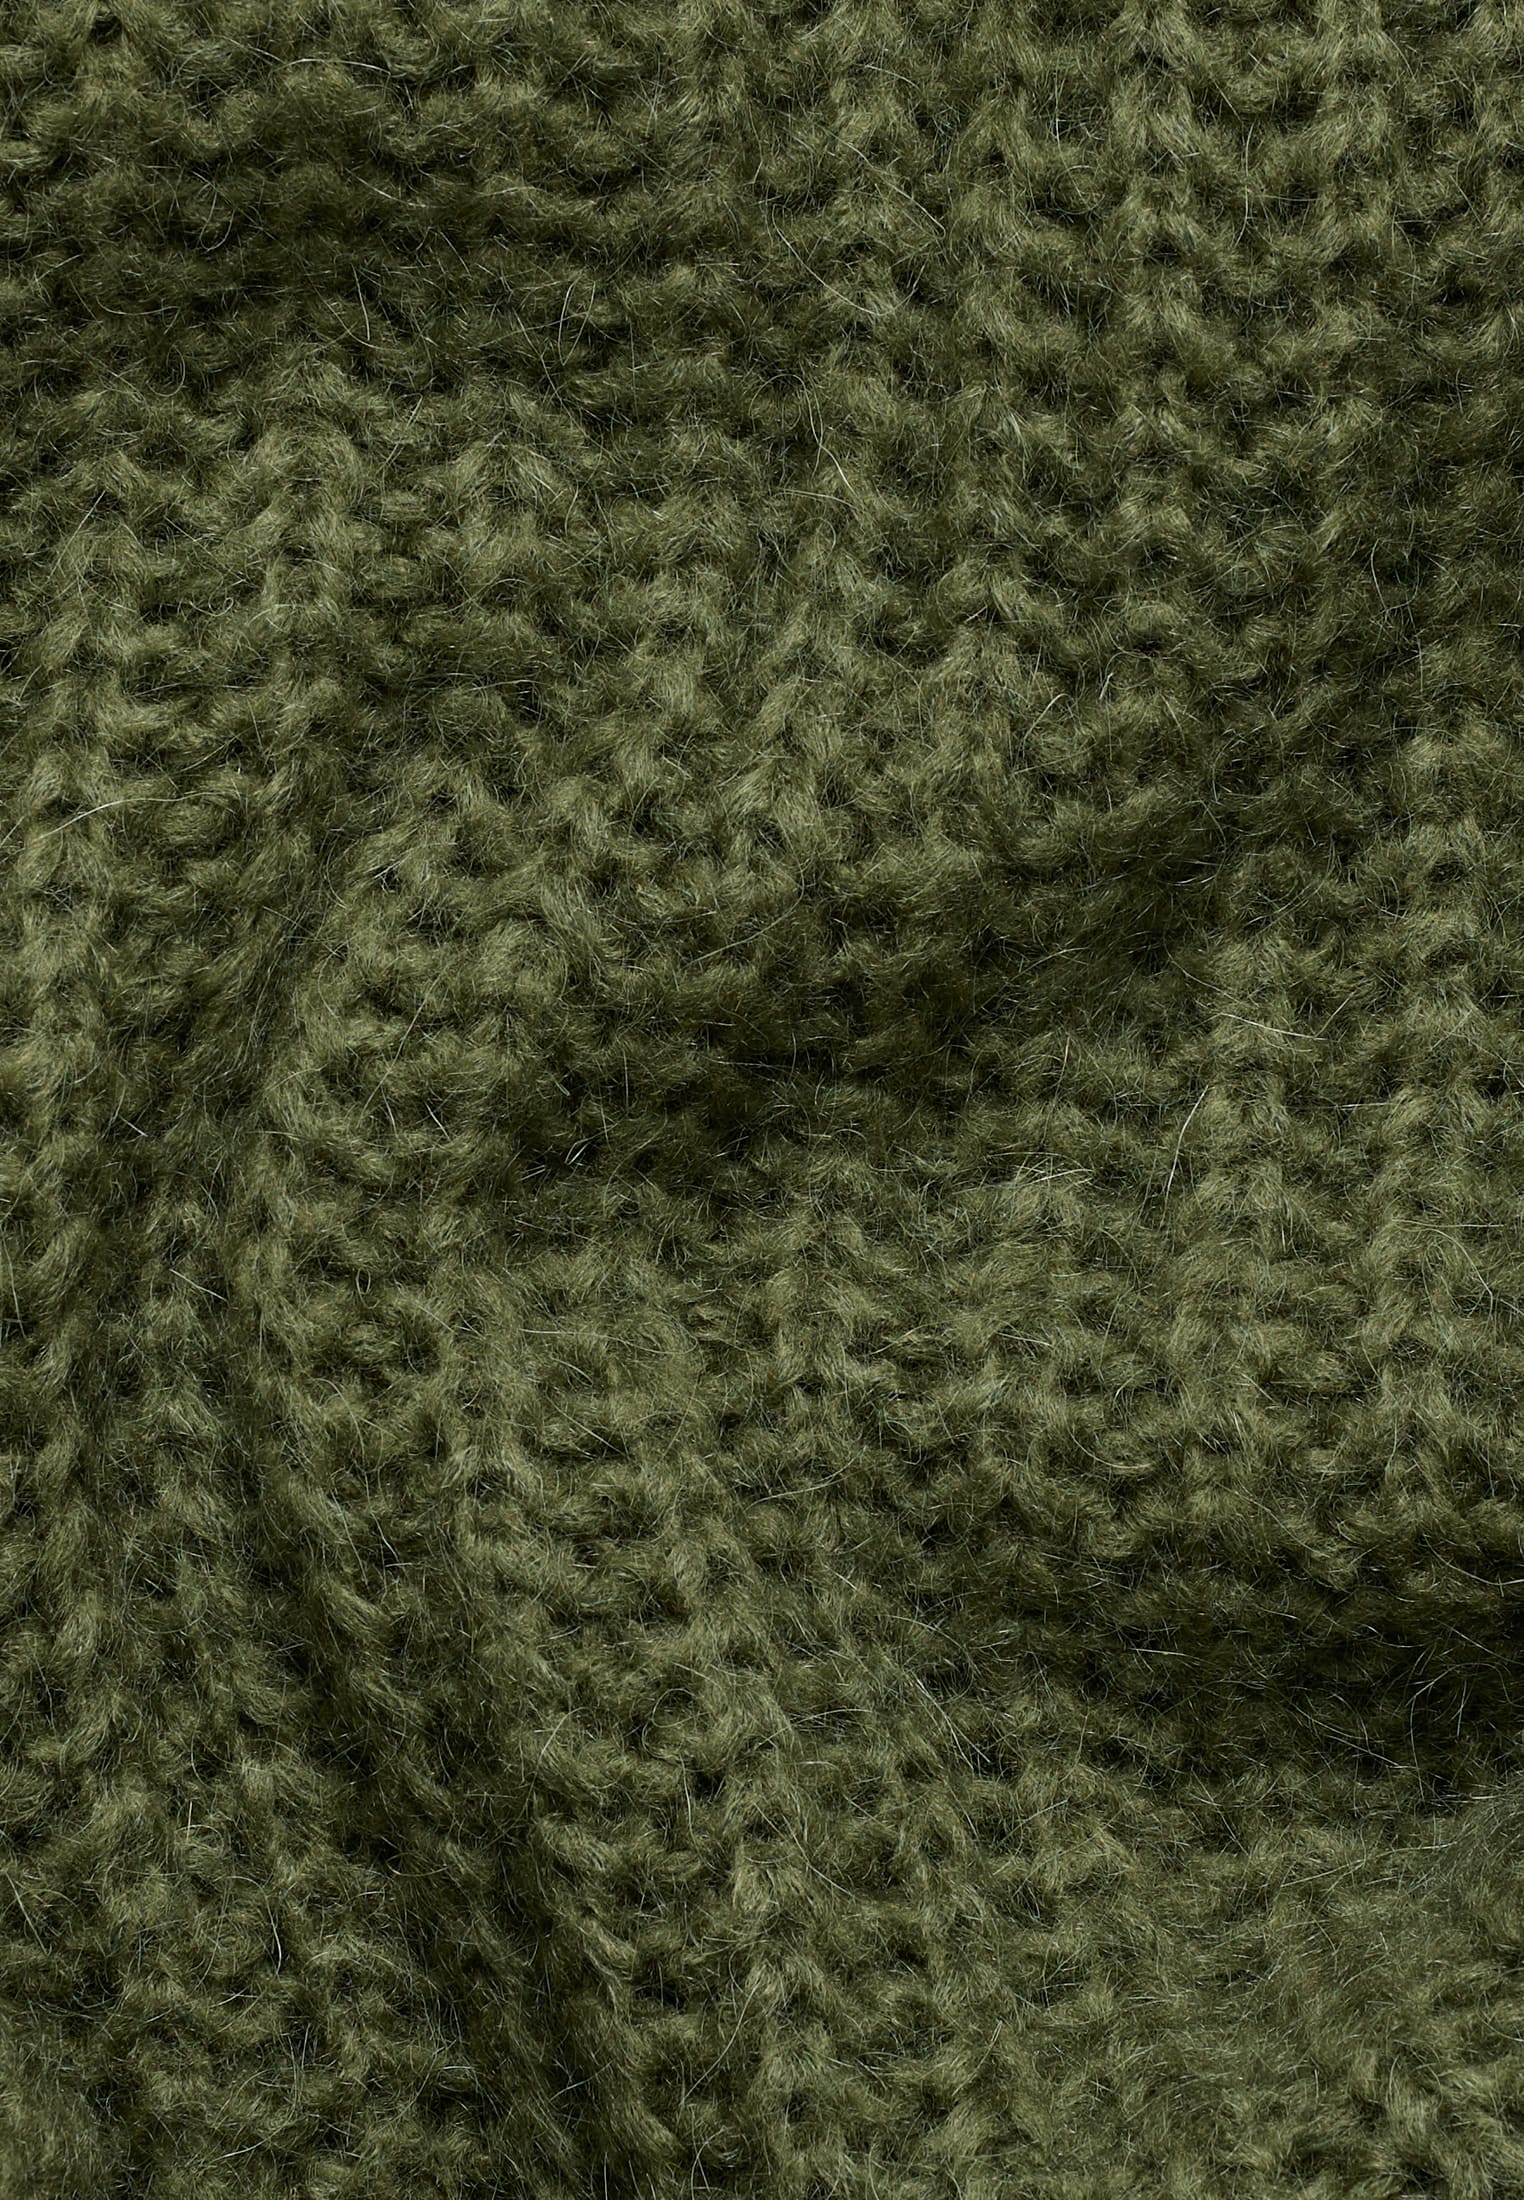 Knitted jumper in khaki plain